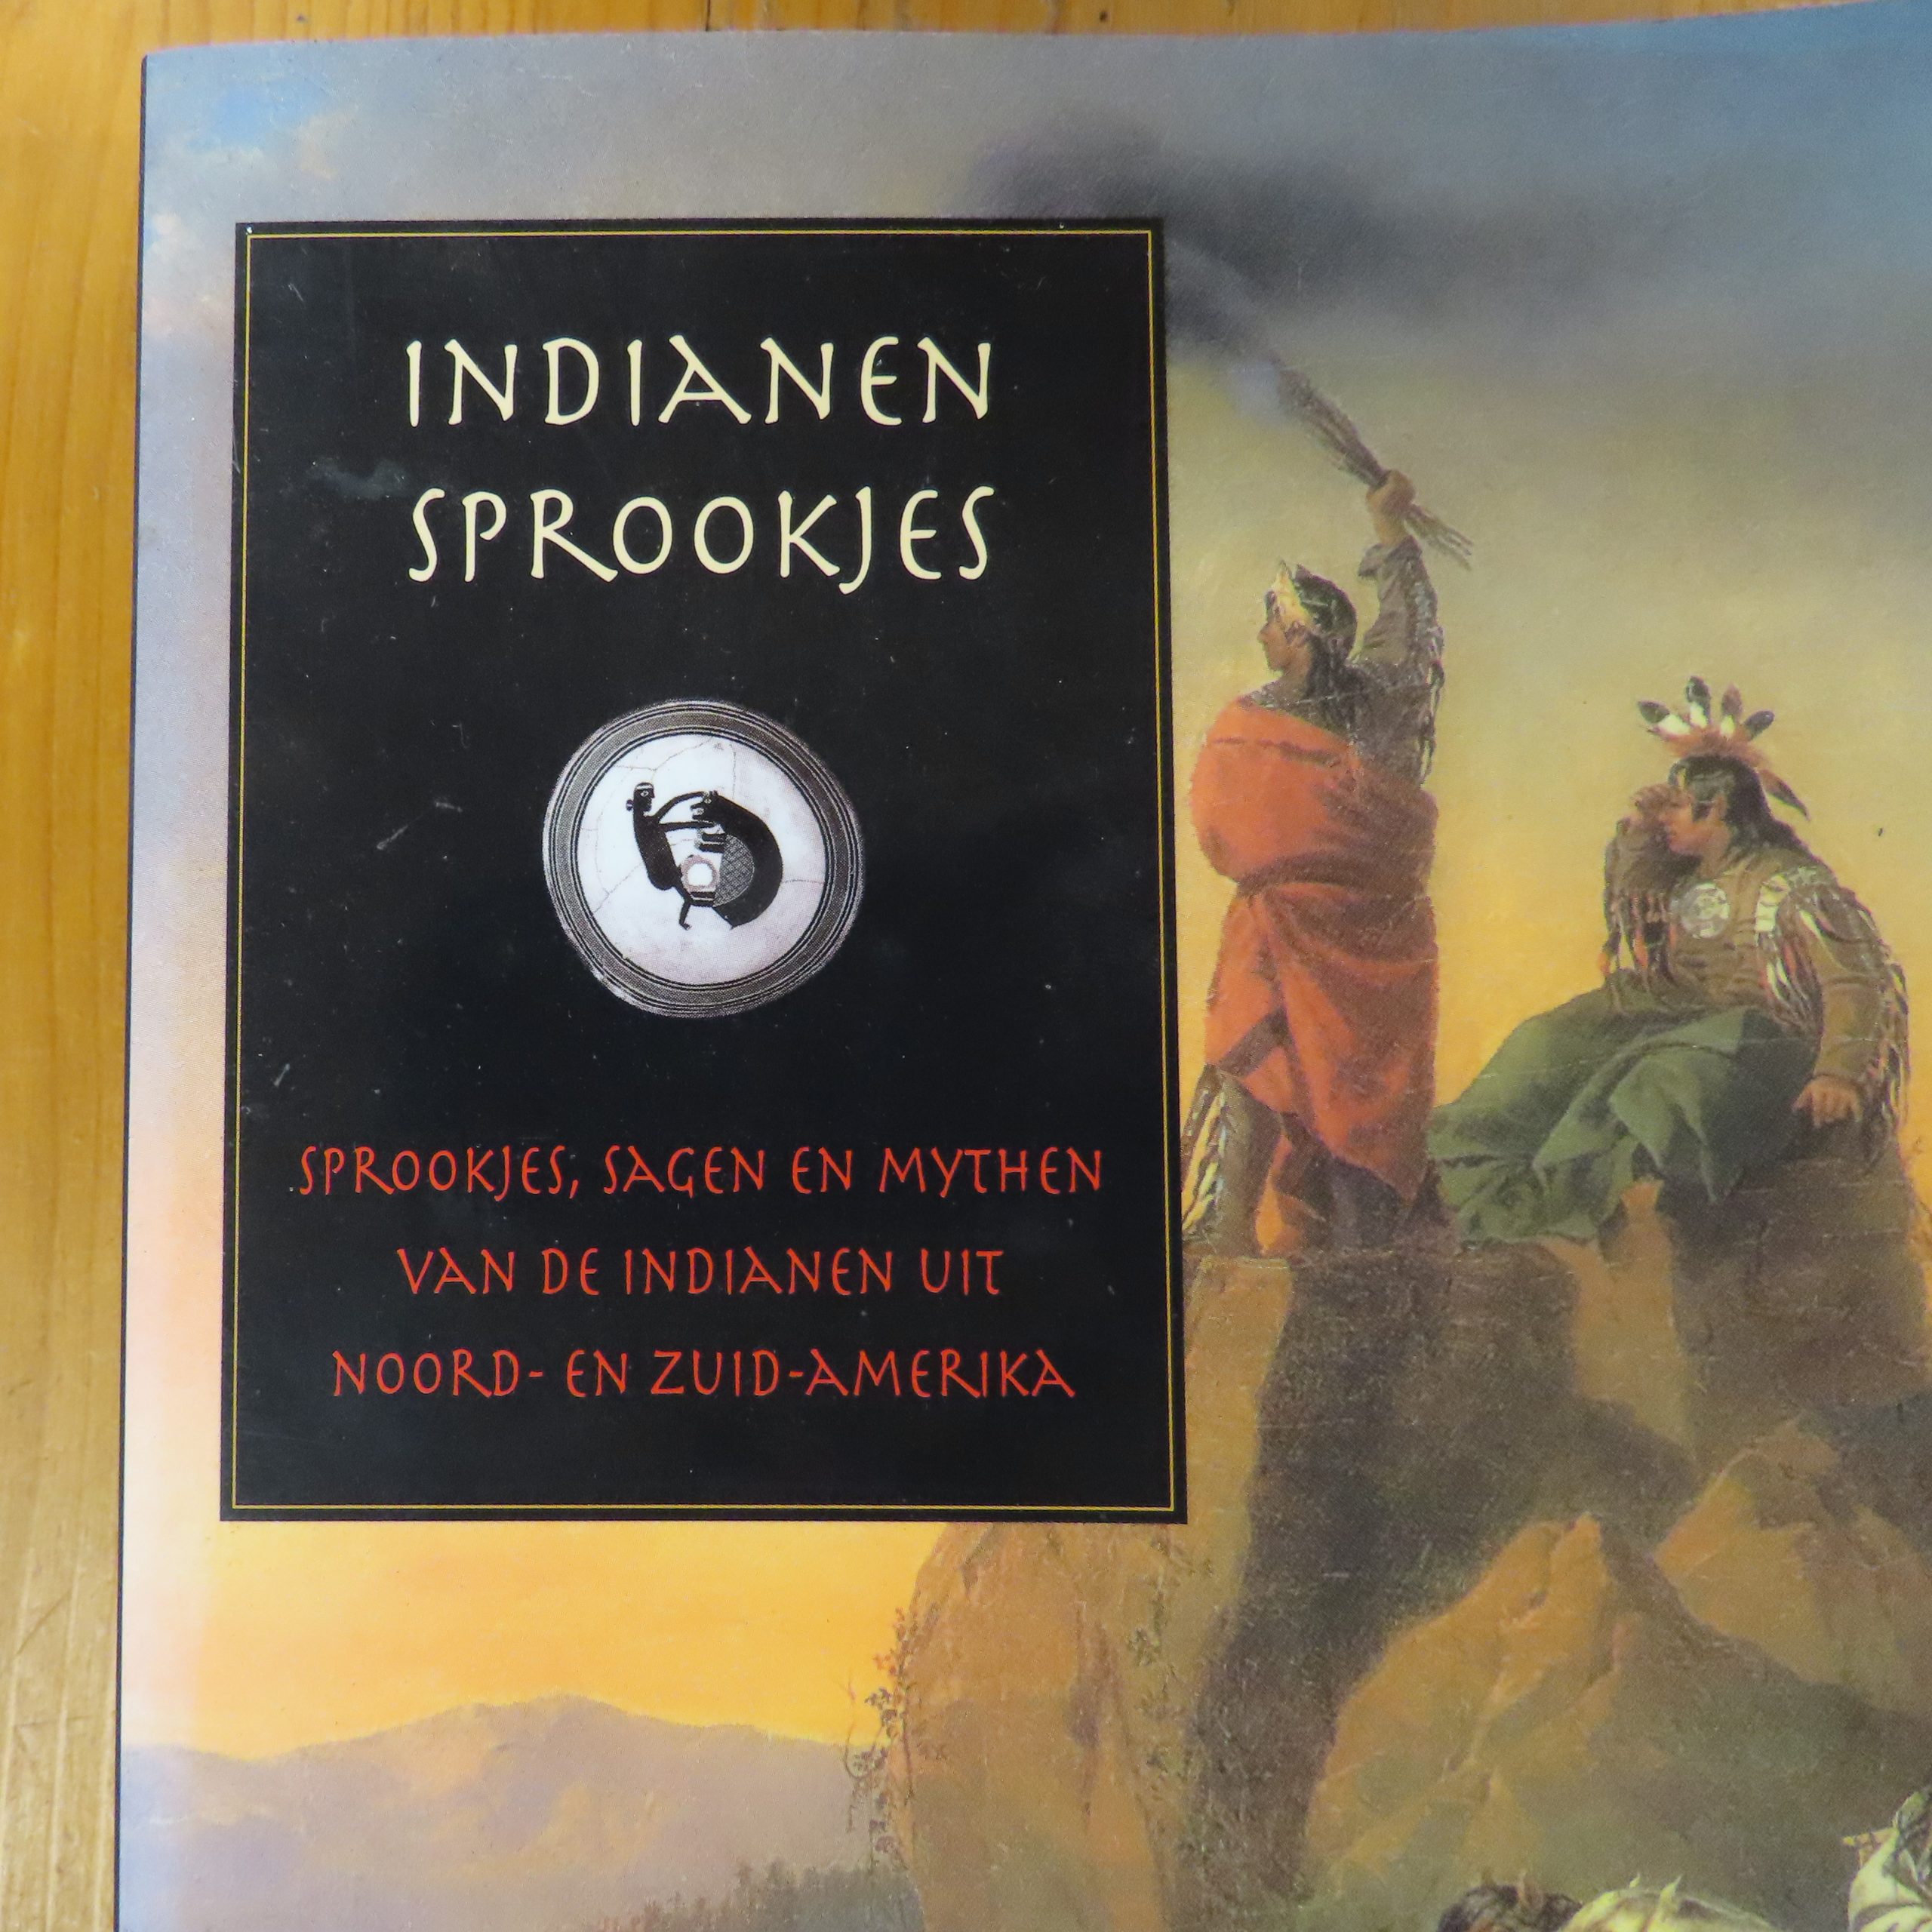 Boek “Indianen Sprookjes sprookjes” sagen en mythen van de Indianen uit Noord- en Zuid-Amerika